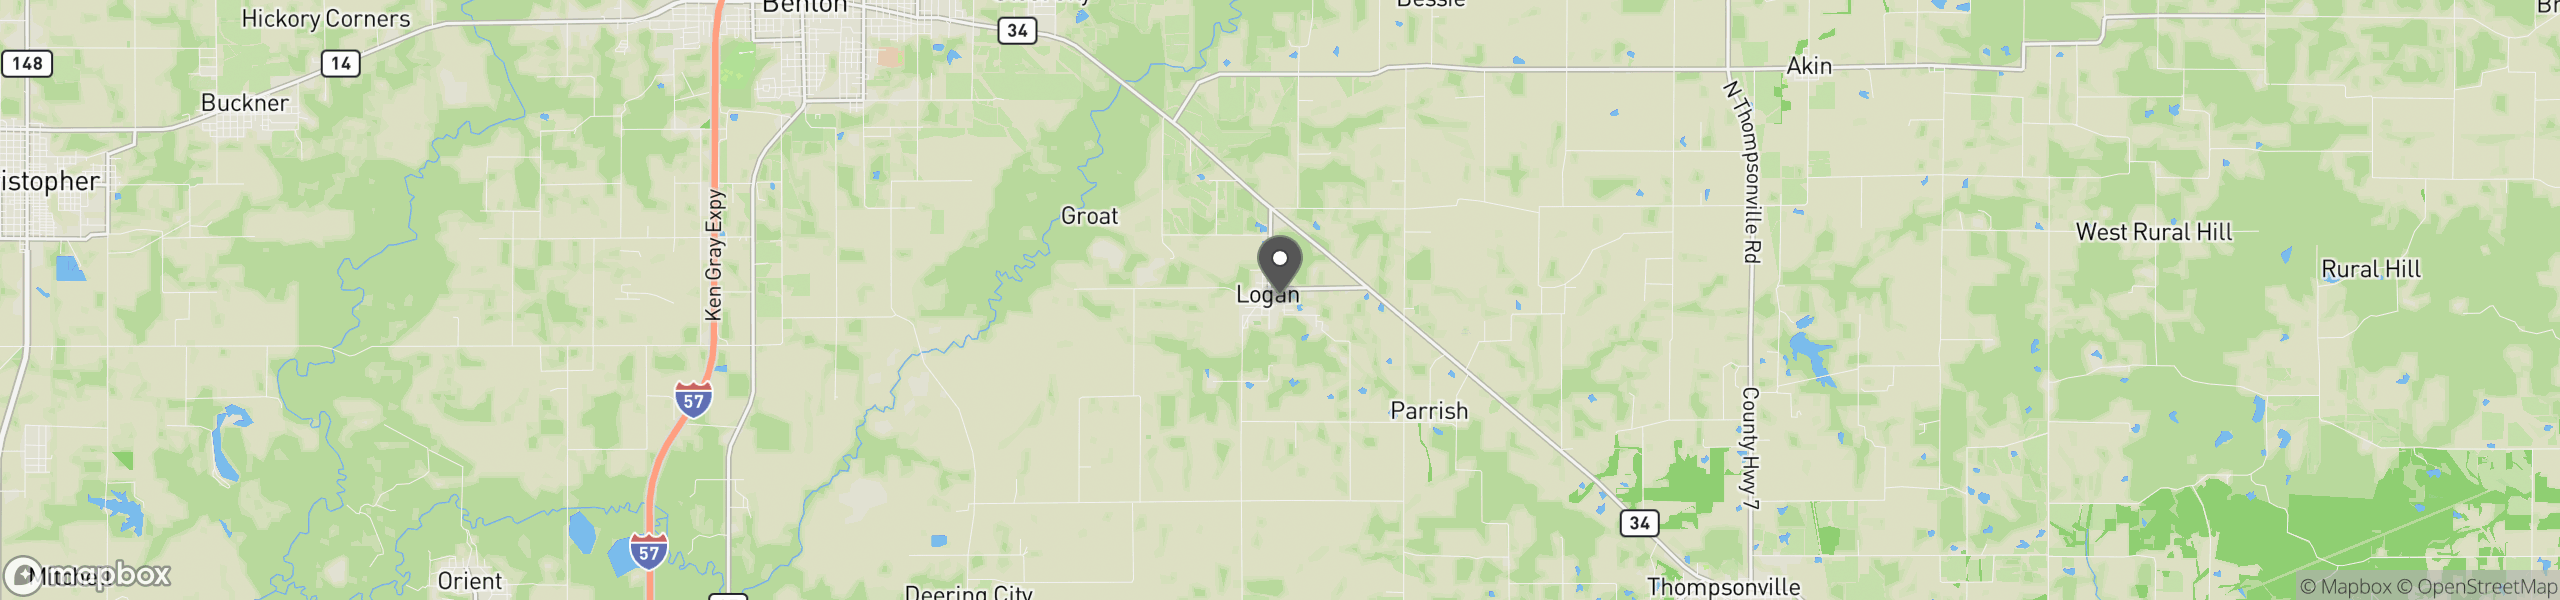 Logan, IL 62856